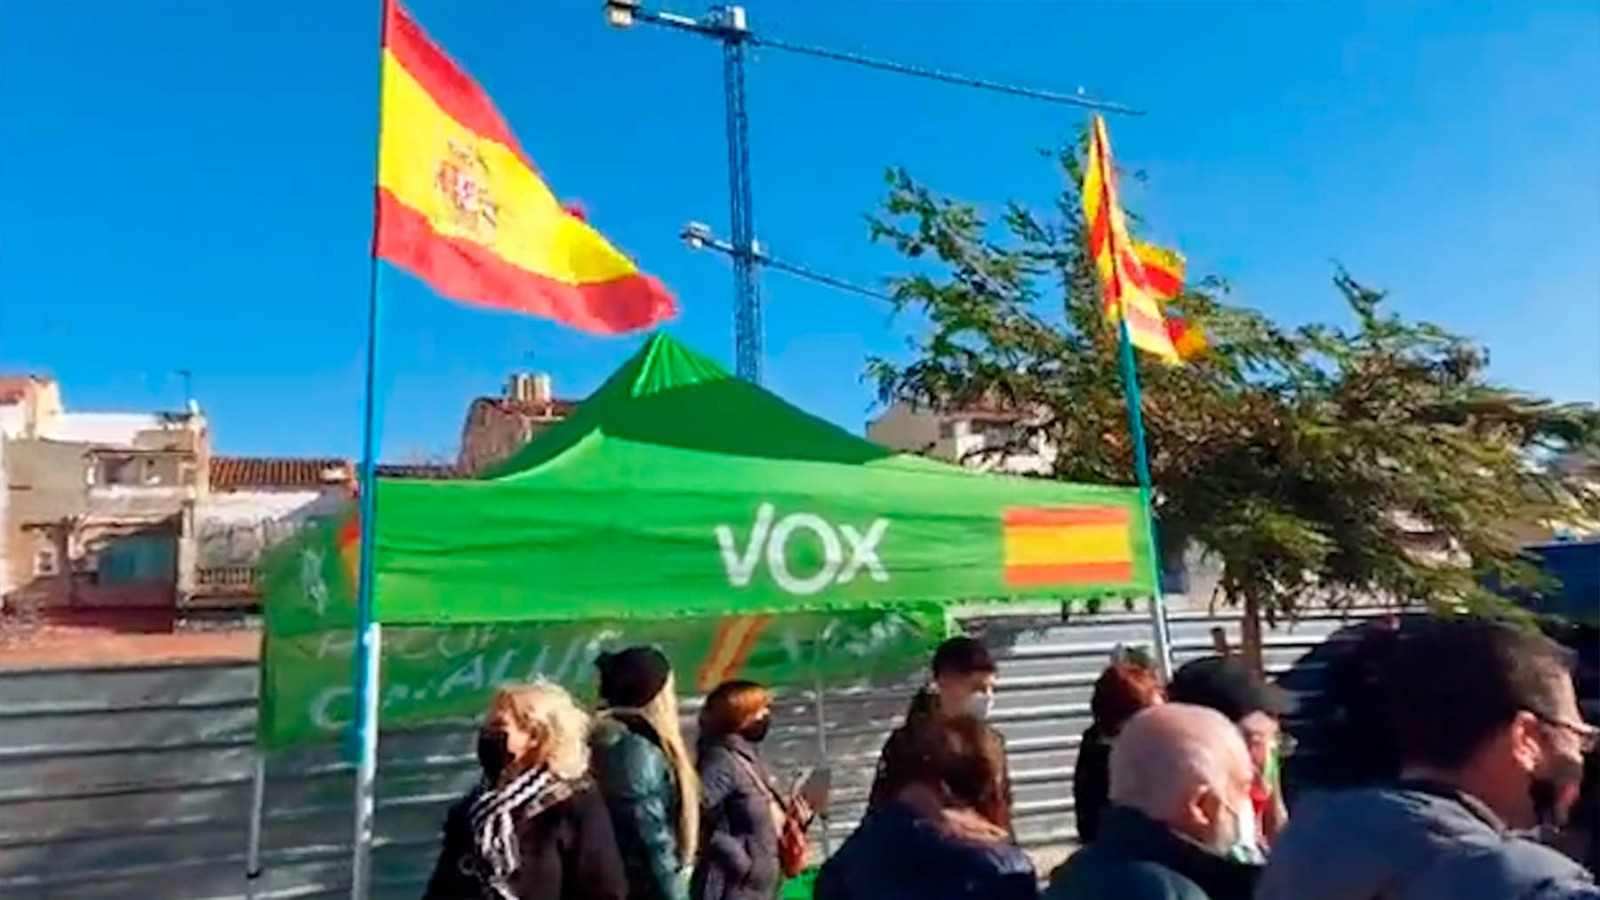 Carpa de Vox en Badalona acosada por los radicales. (Imagen: @SergioLopezVox)